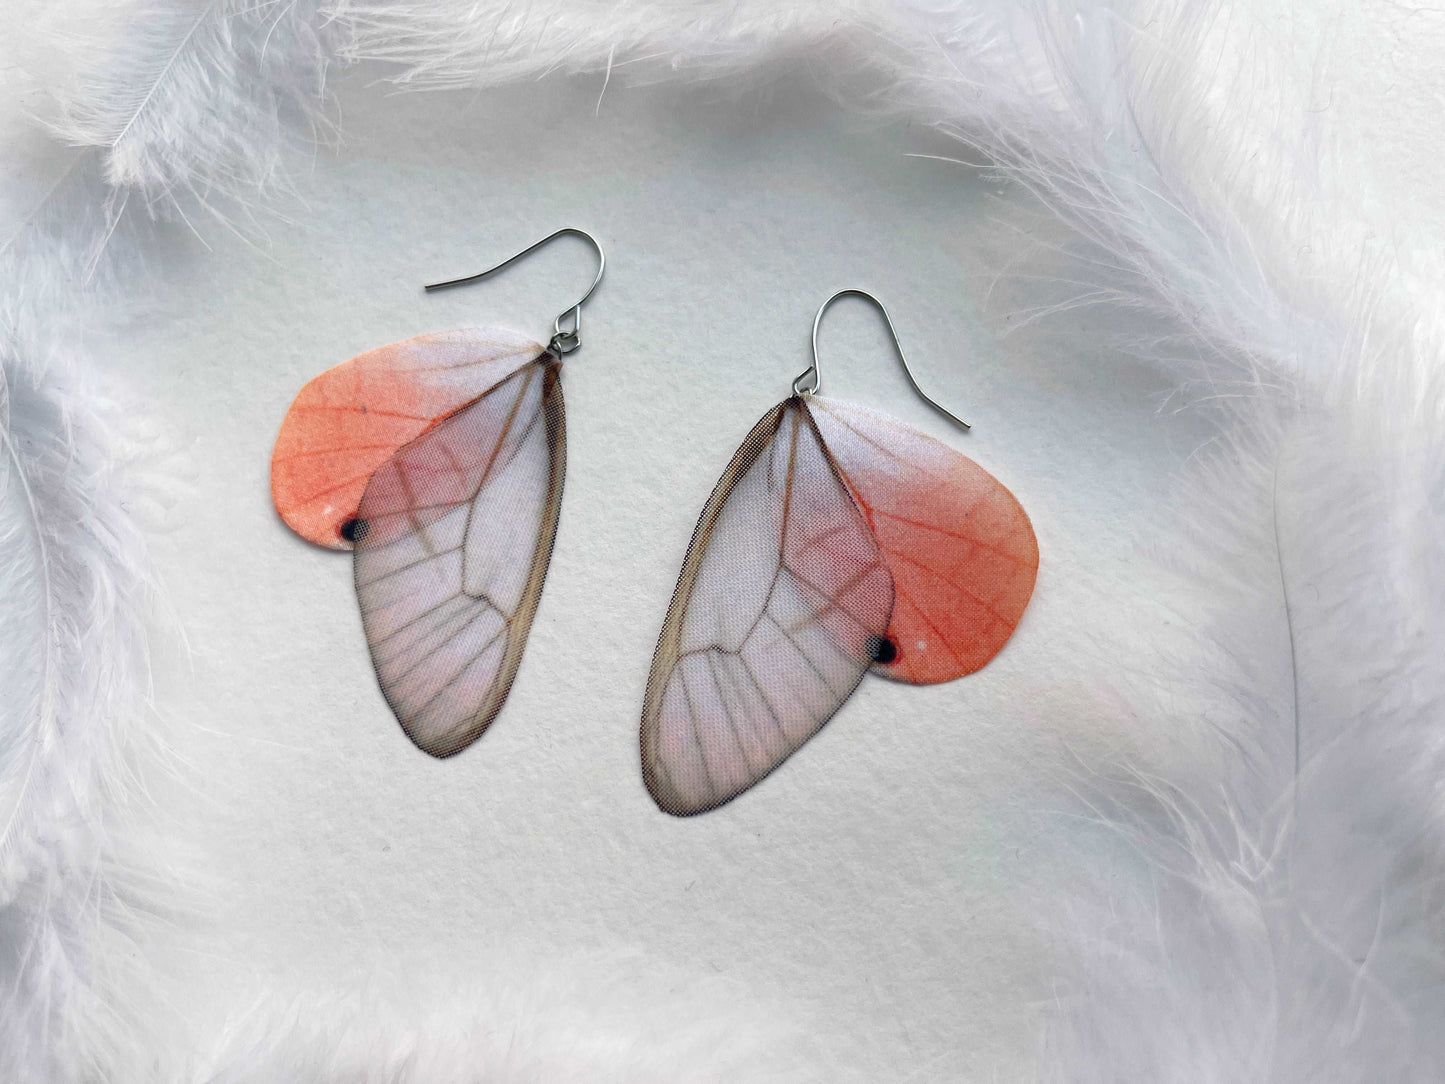 Glasswing Butterfly Wing Earrings in Boho Style